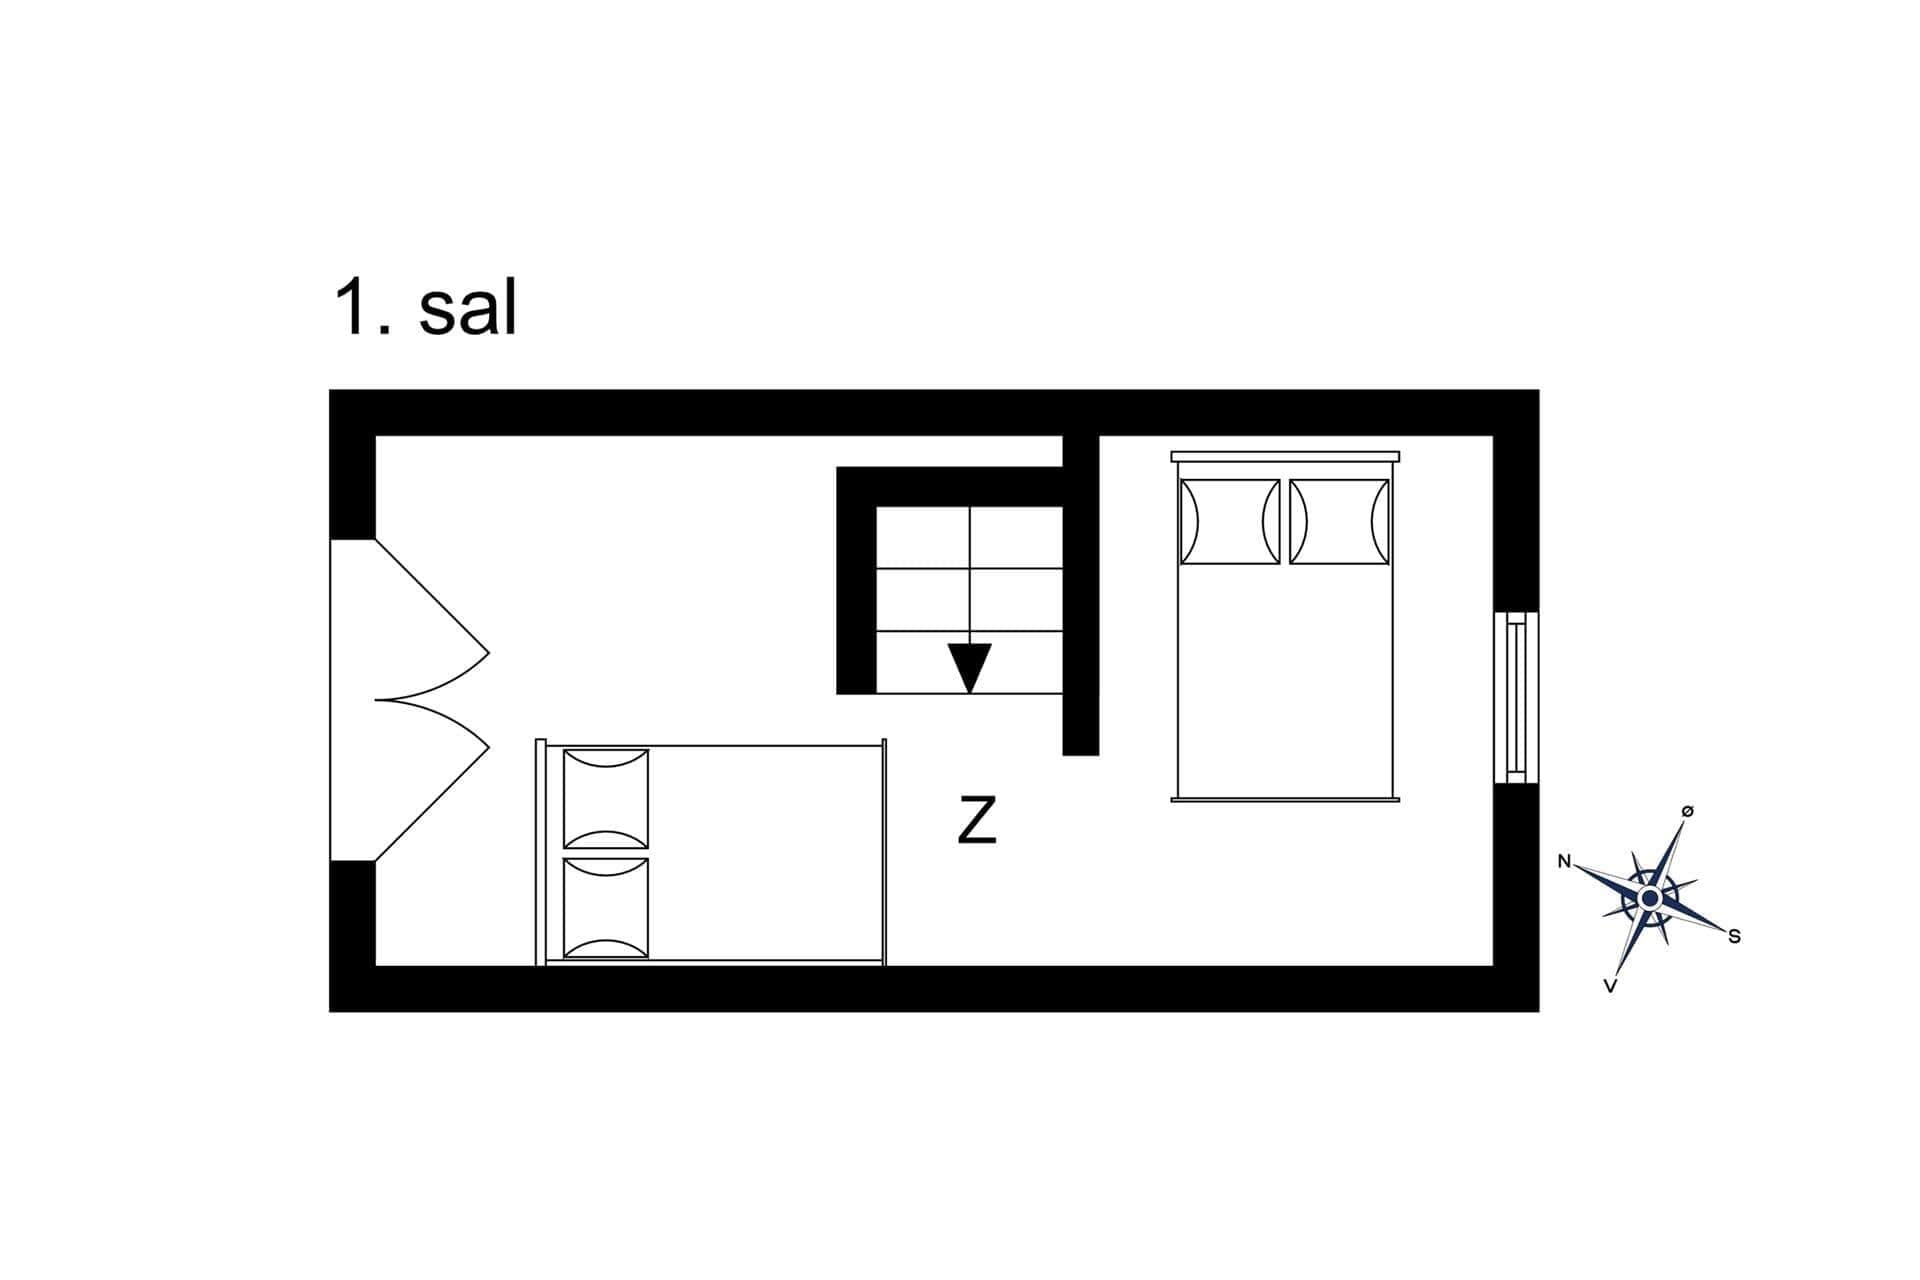 Interior 22-6 Holiday-home N261, Enø Kystvej 138, DK - 4736 Karrebæksminde